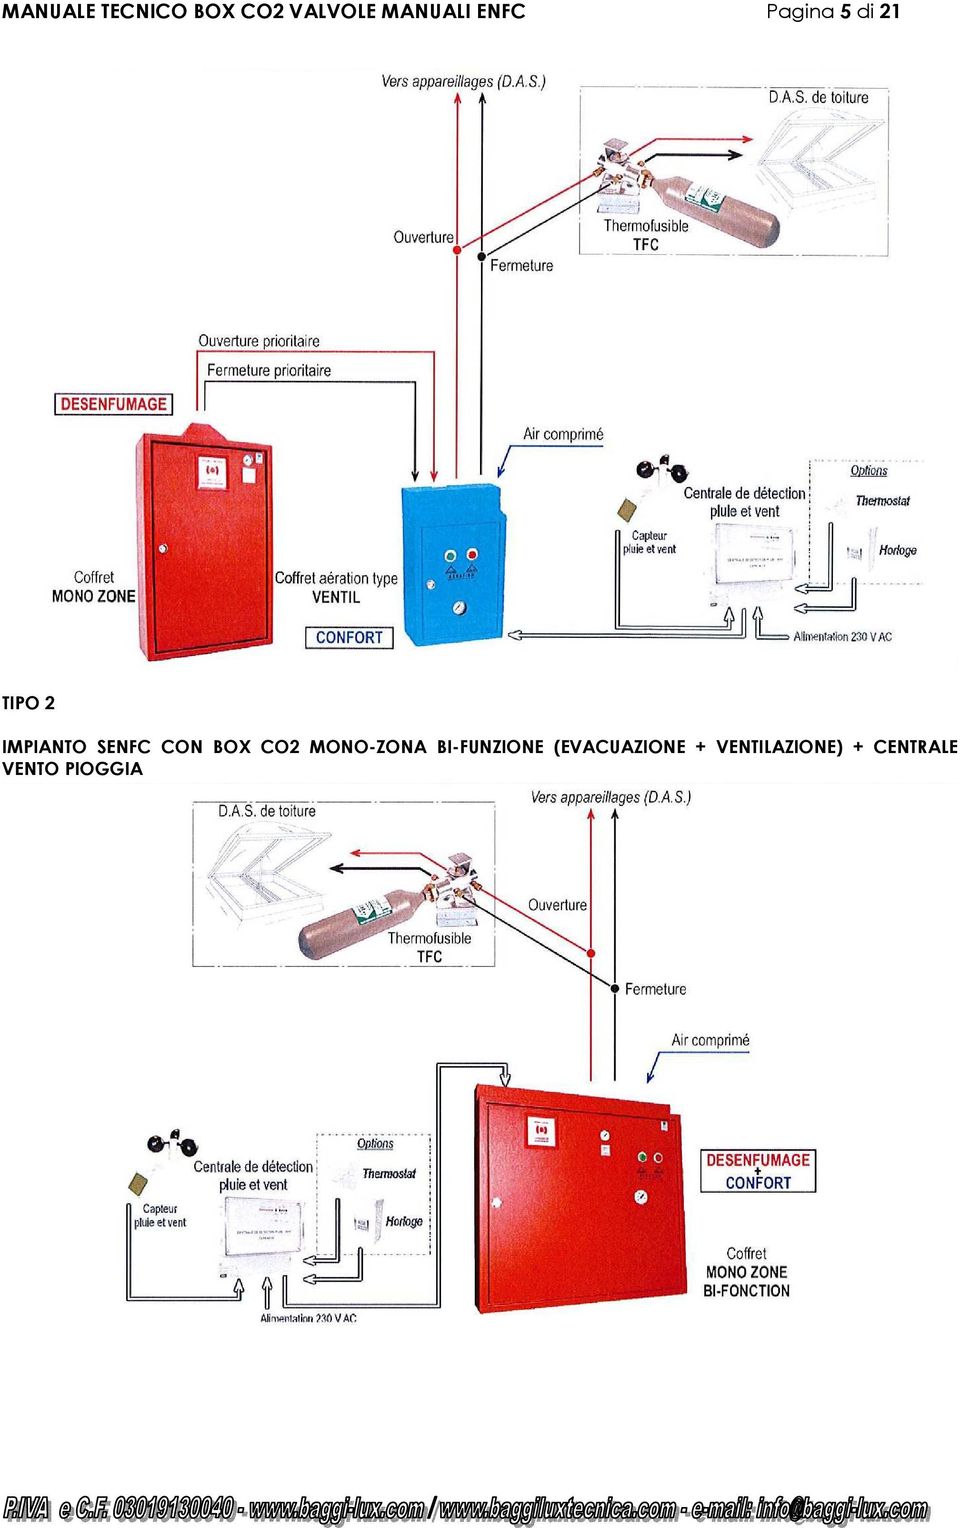 CON BOX CO2 MONO-ZONA BI-FUNZIONE